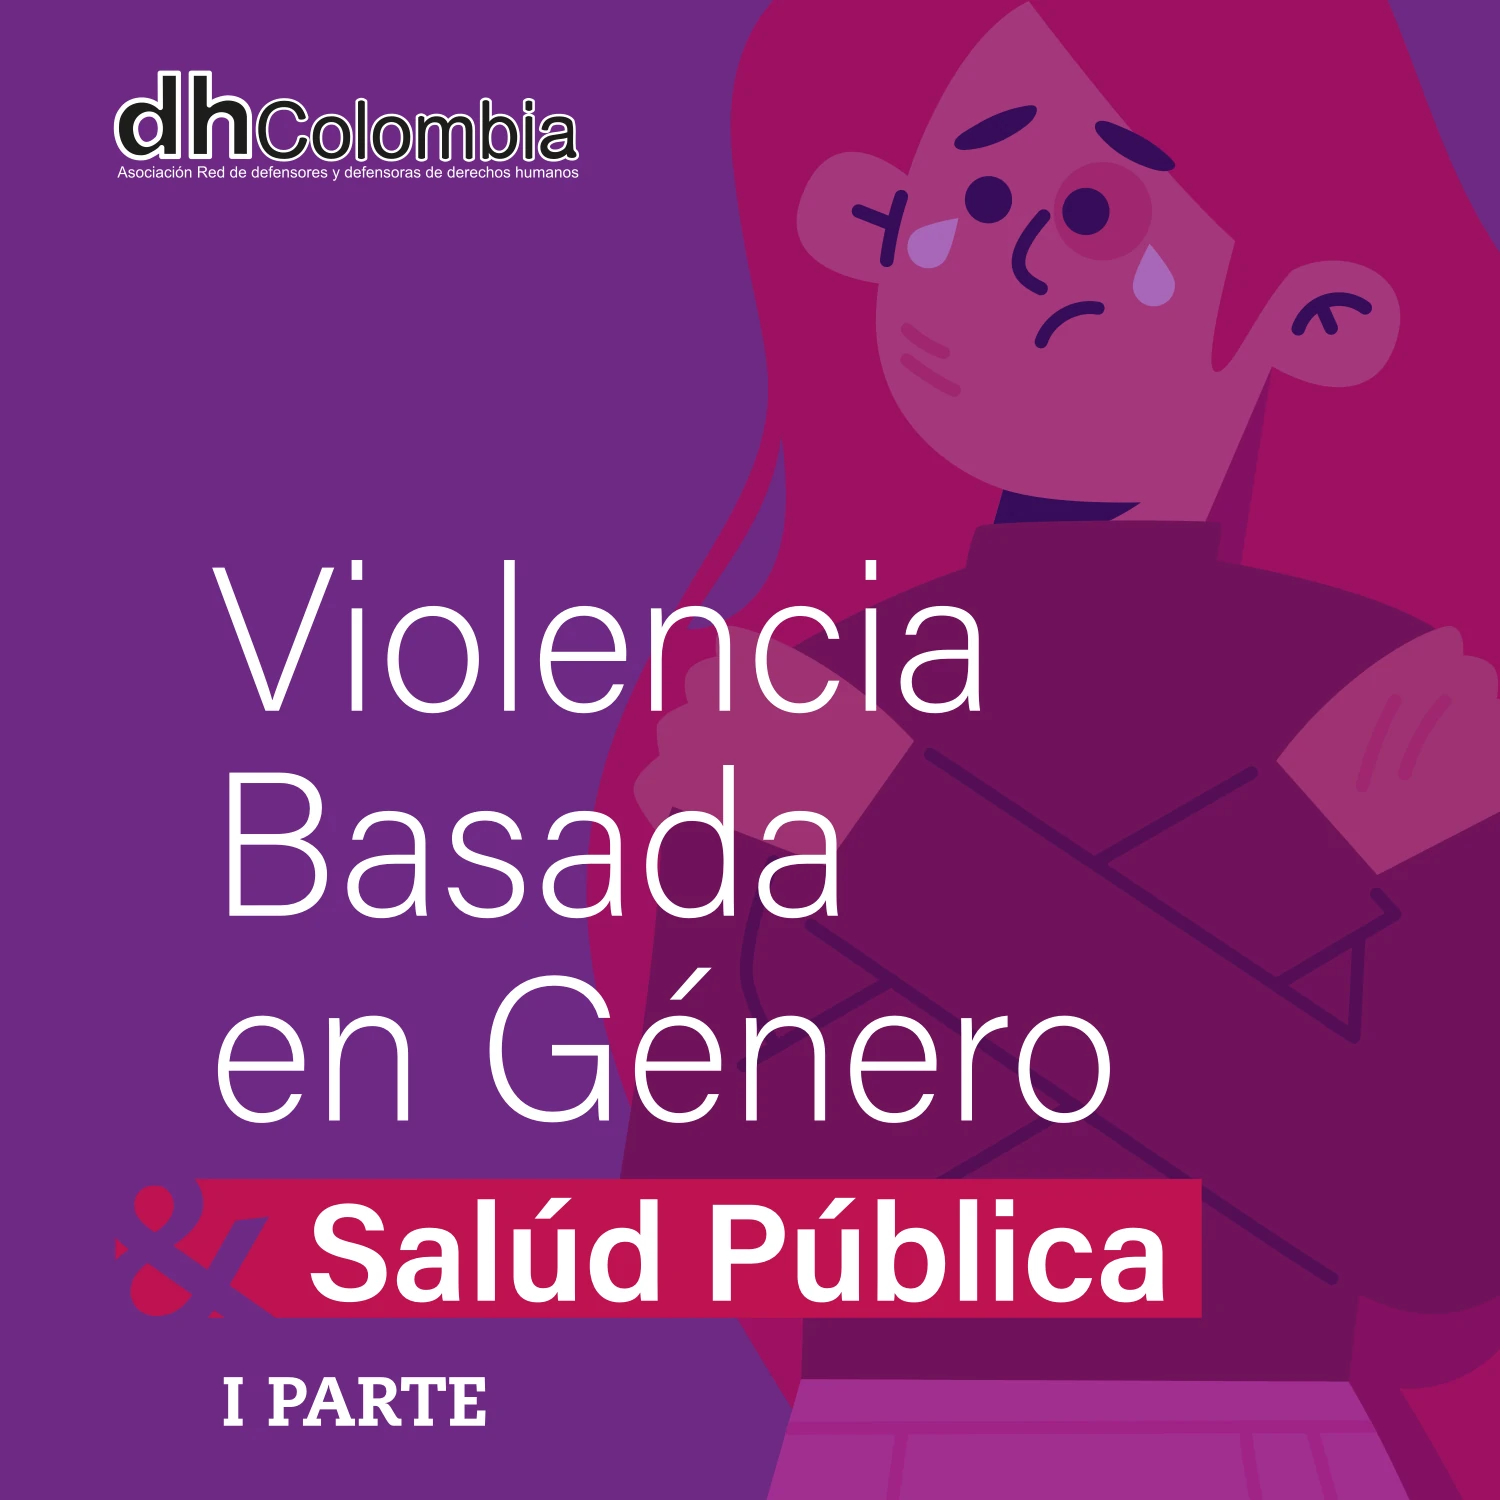 dhColombia Violencia basada en género 5A 01 violencias basadas en genero